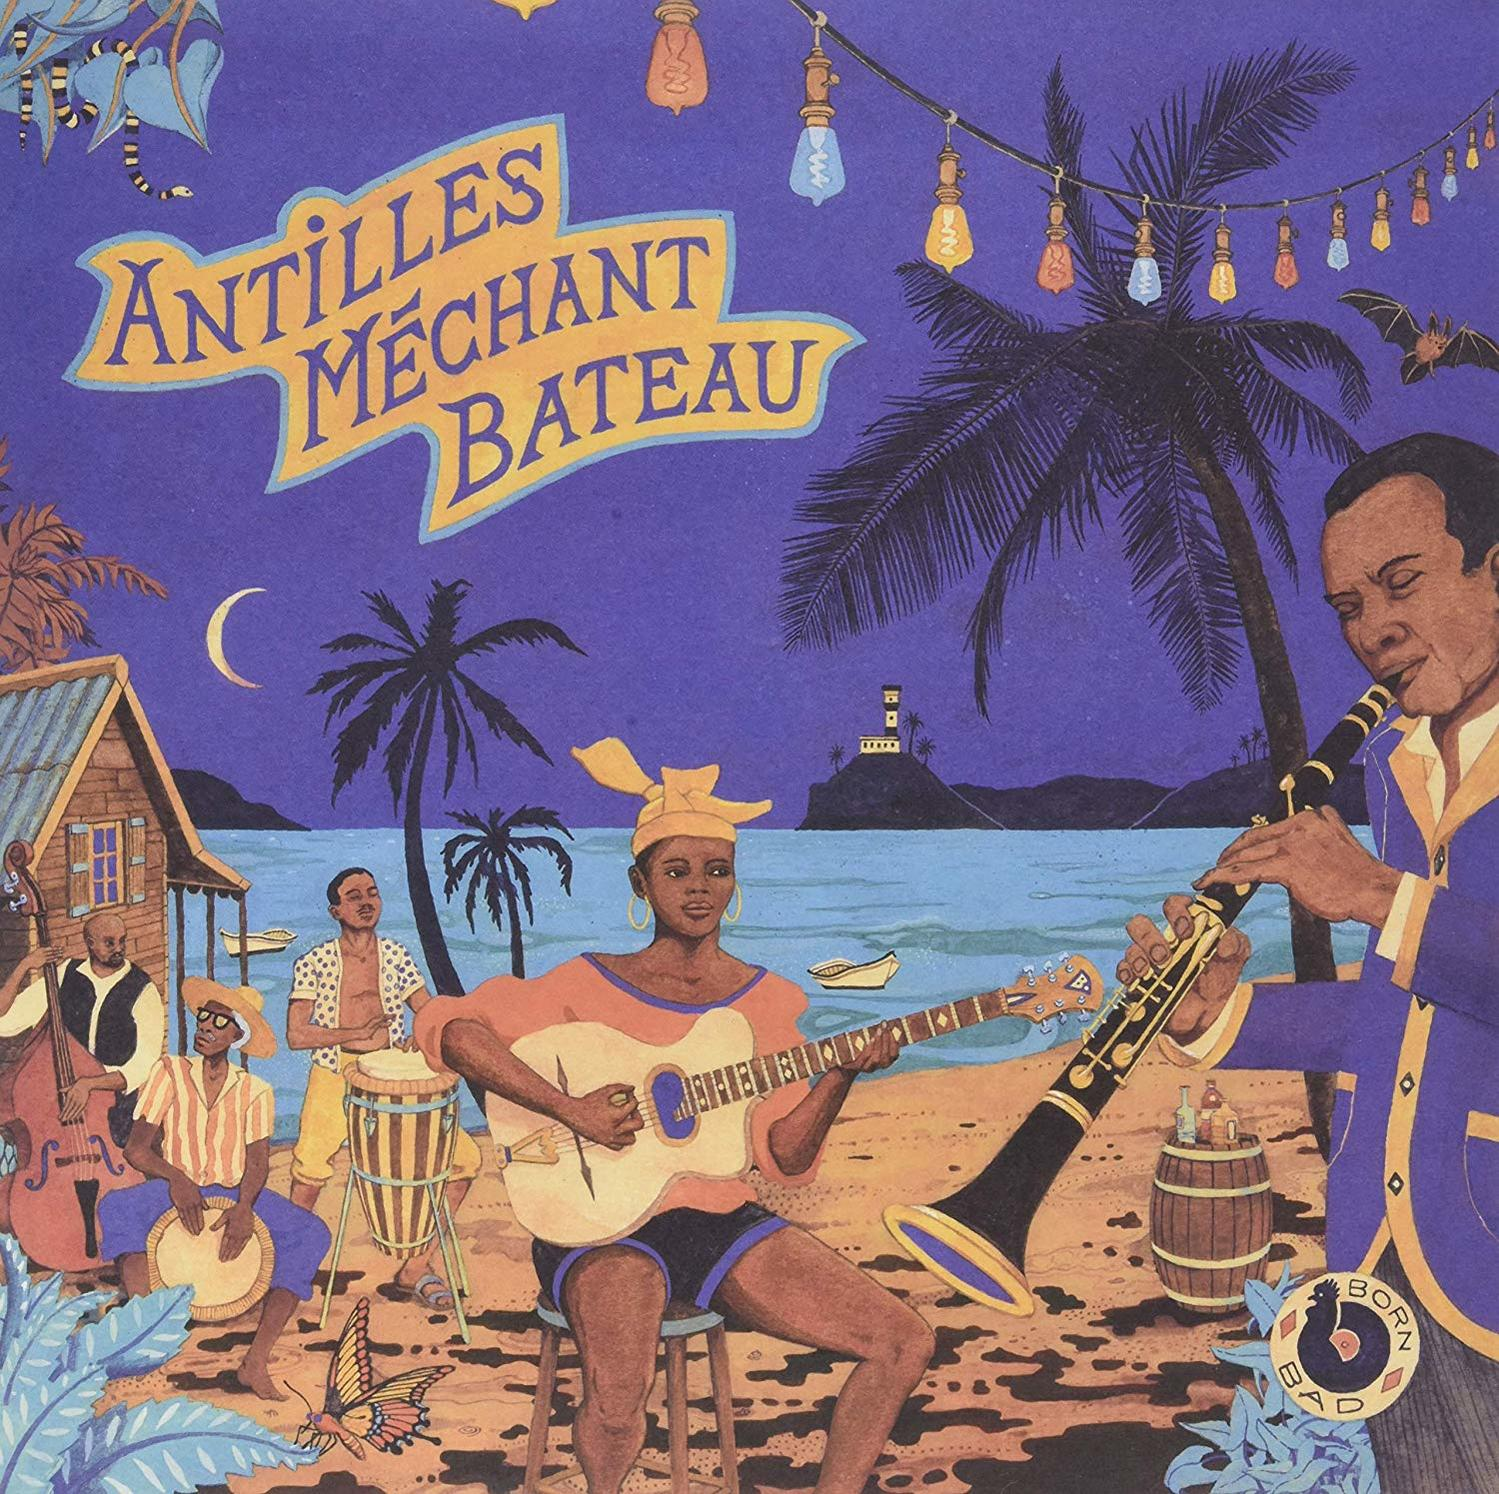 VARIOUS & Antilles Ka - (CD) Gwo Biguines Bateau-Deep - Mechant